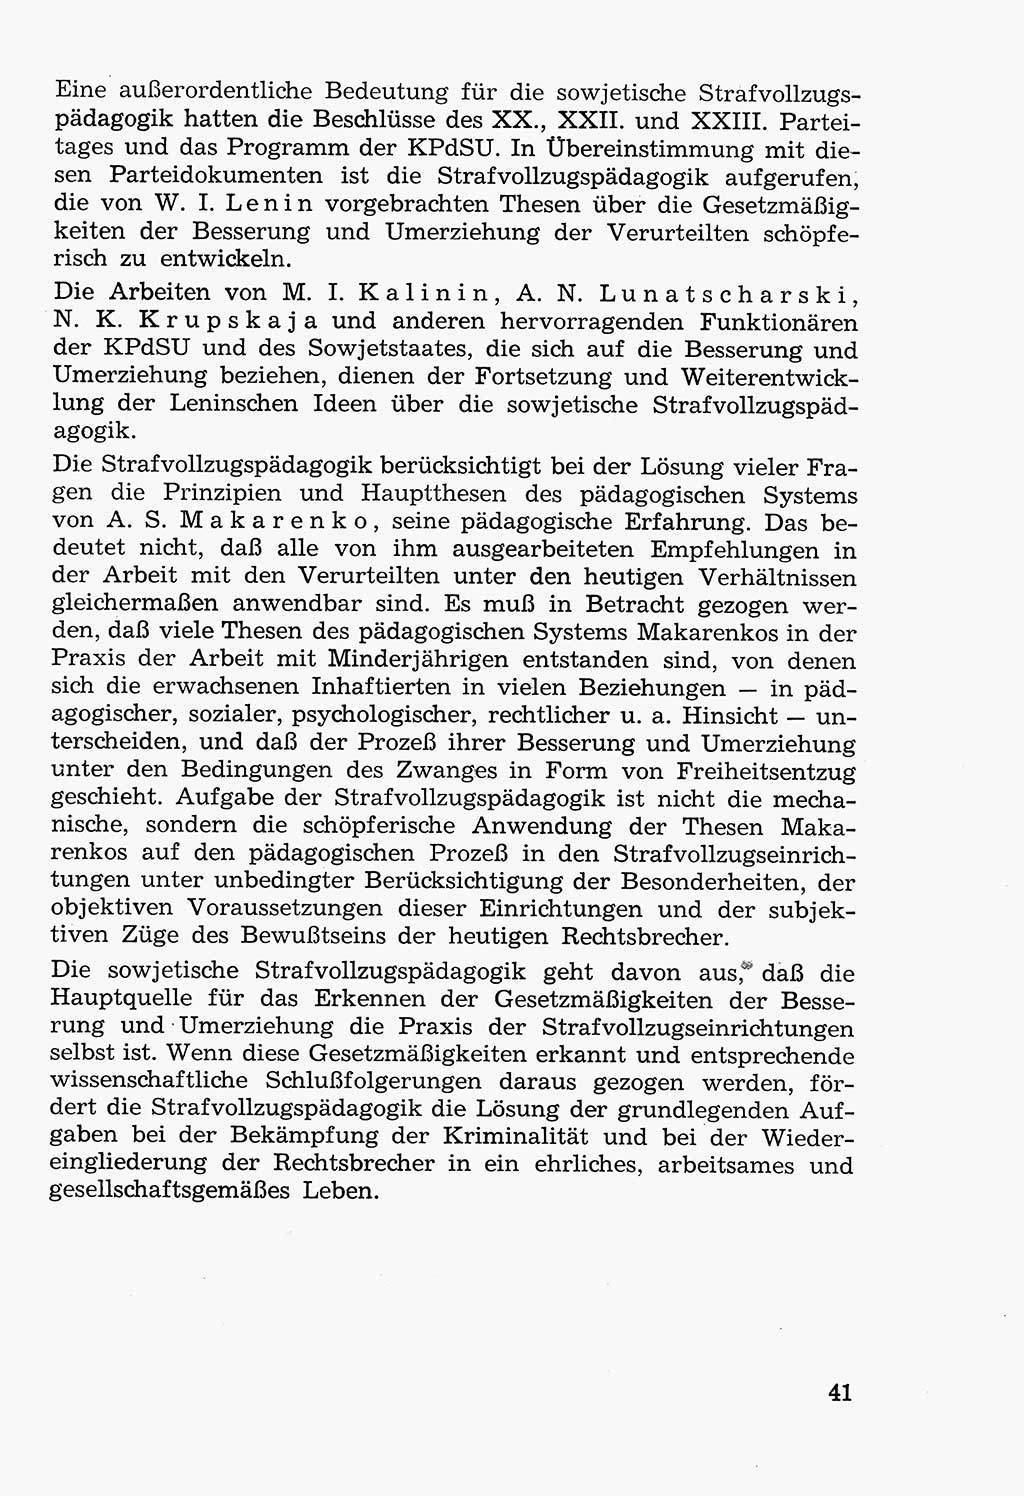 Lehrbuch der Strafvollzugspädagogik [Deutsche Demokratische Republik (DDR)] 1969, Seite 41 (Lb. SV-Pd. DDR 1969, S. 41)